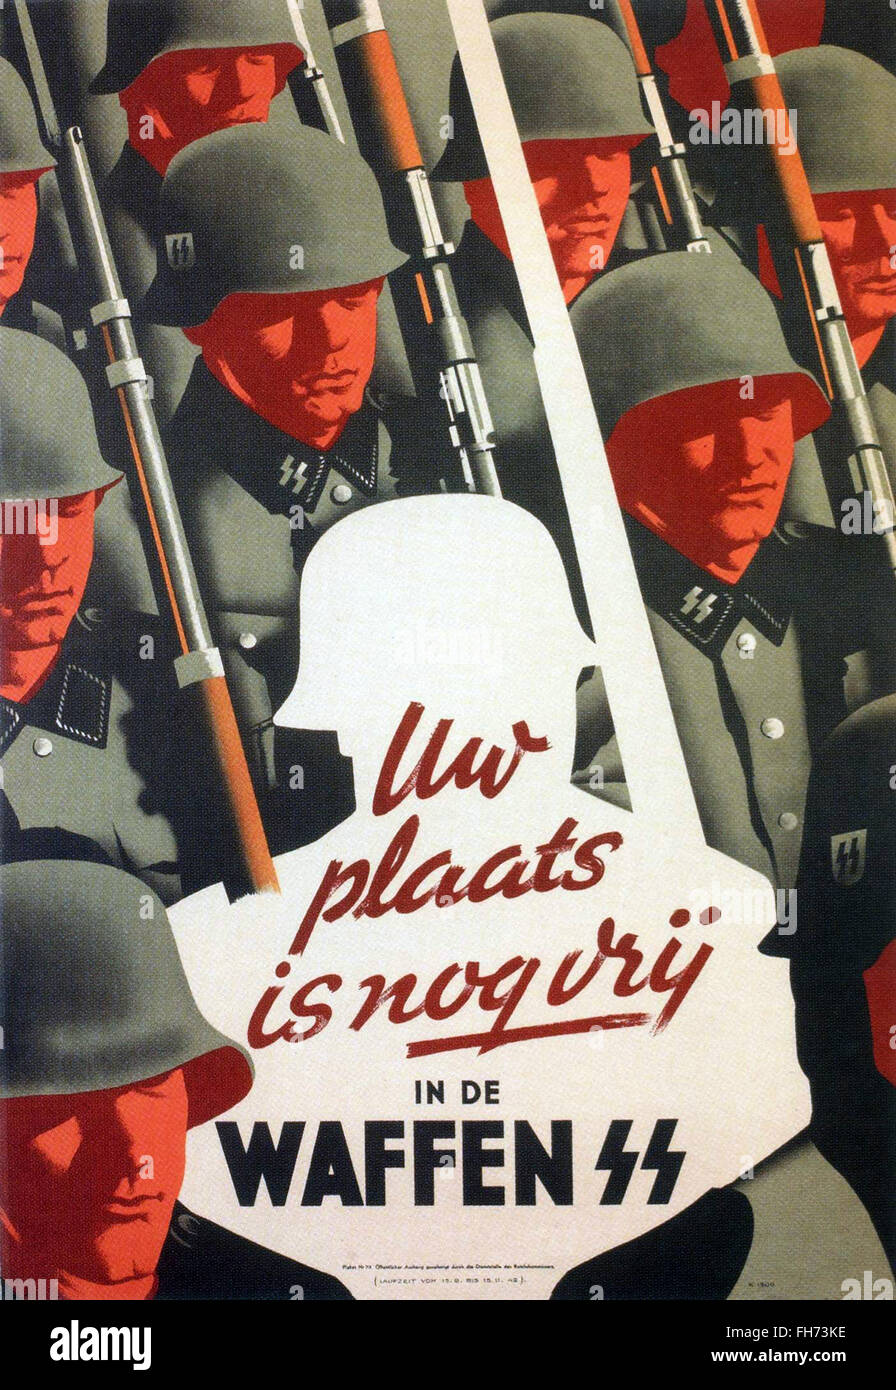 Waffen SS -   Nazi Propaganda Poster - WWII Stock Photo